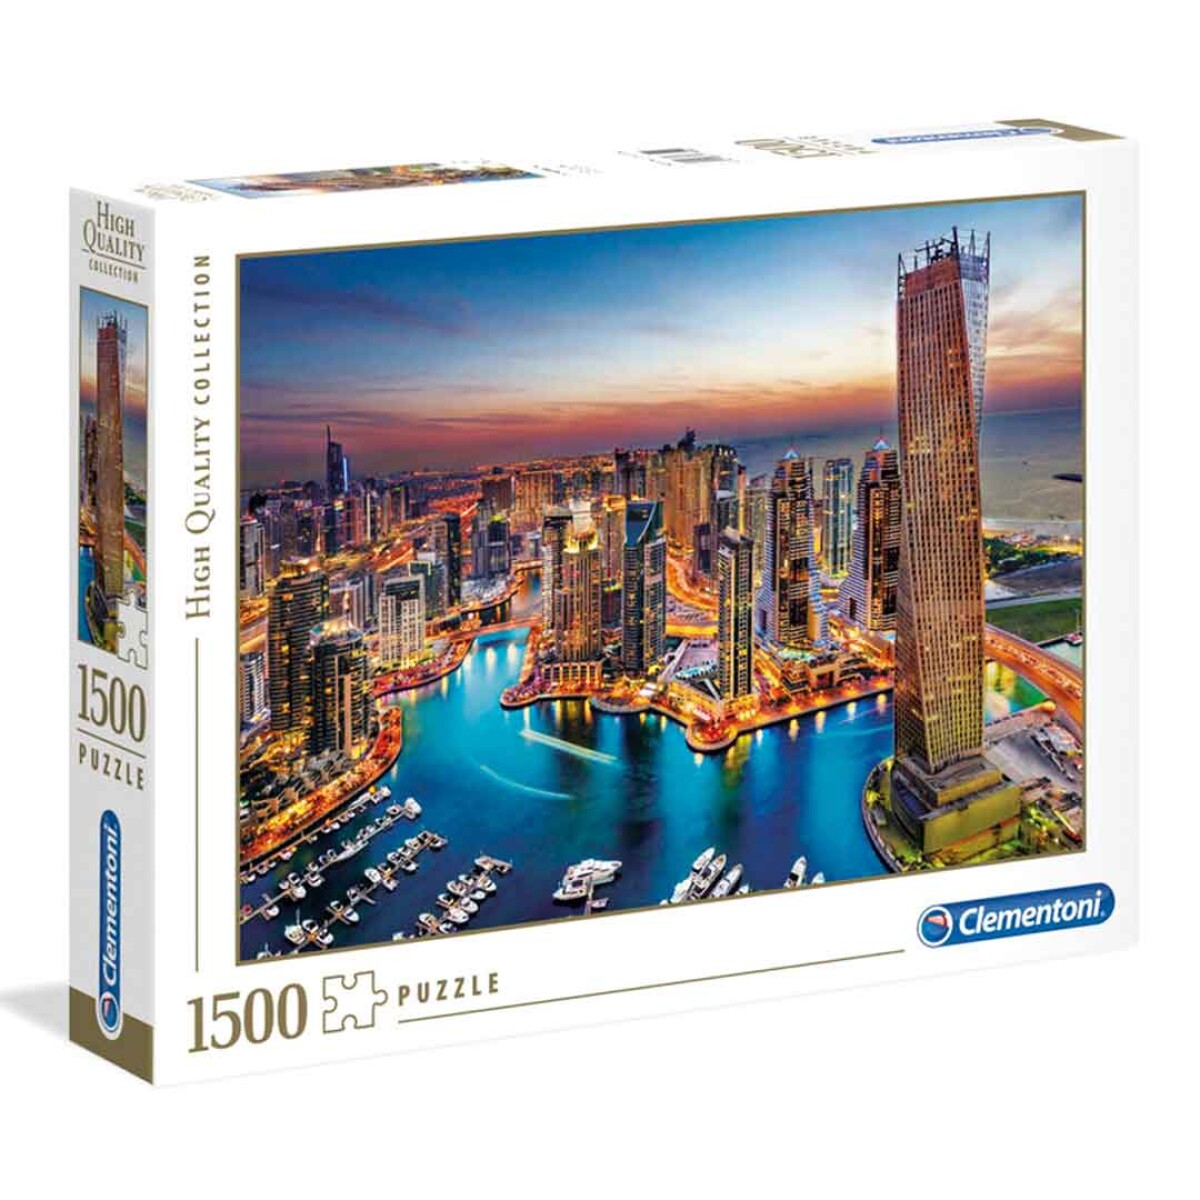 Puzzle Clementoni 1500 piezas Dubai High Quality - 001 